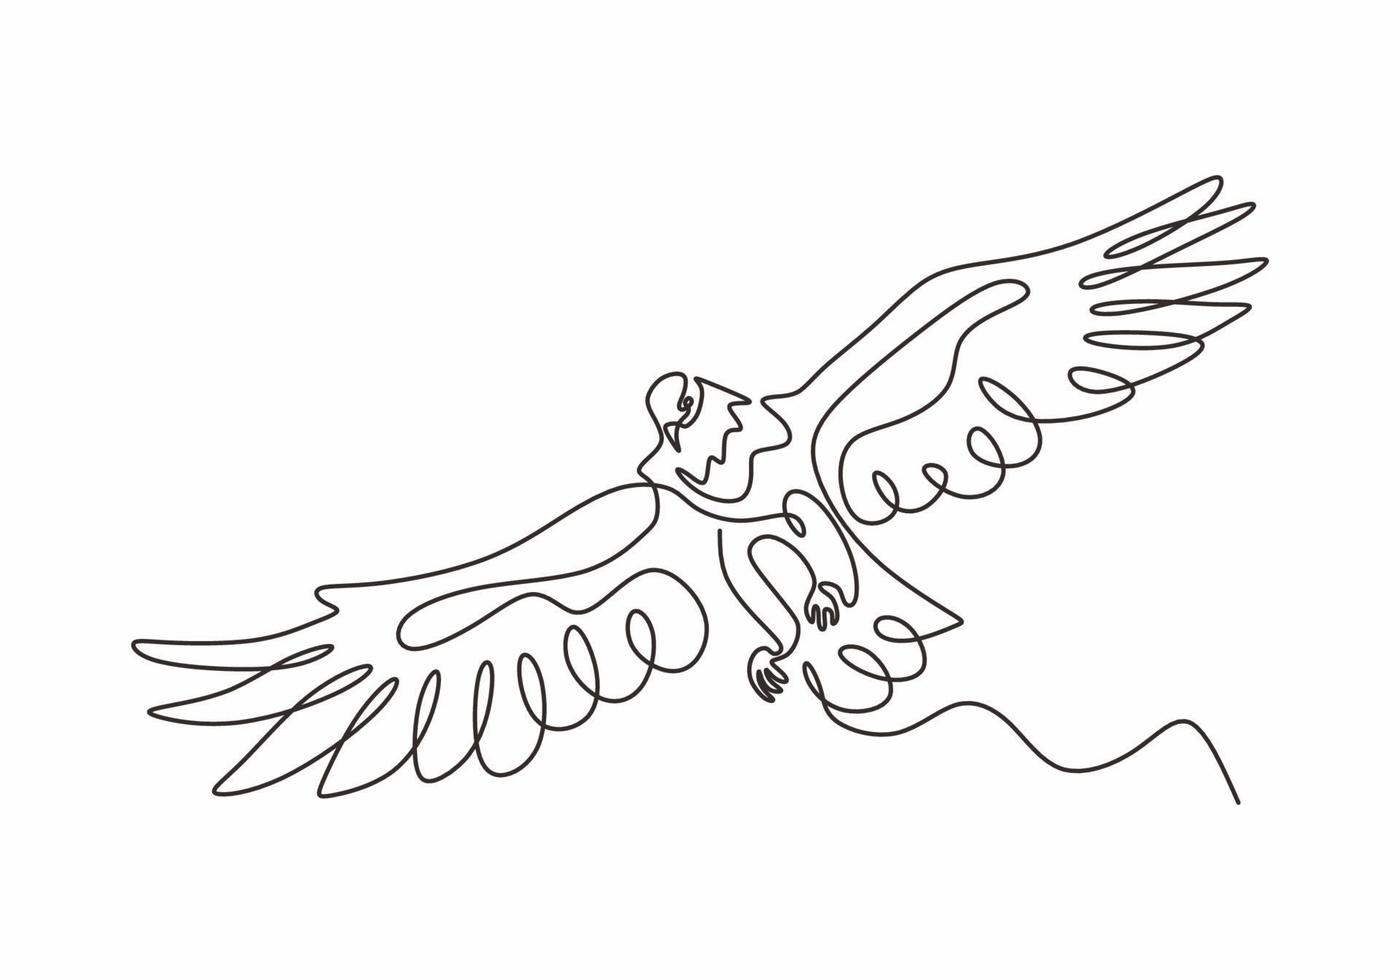 kontinuierliche einzeilige Zeichnung des Adler- oder Falkenvogelvektors, vektor